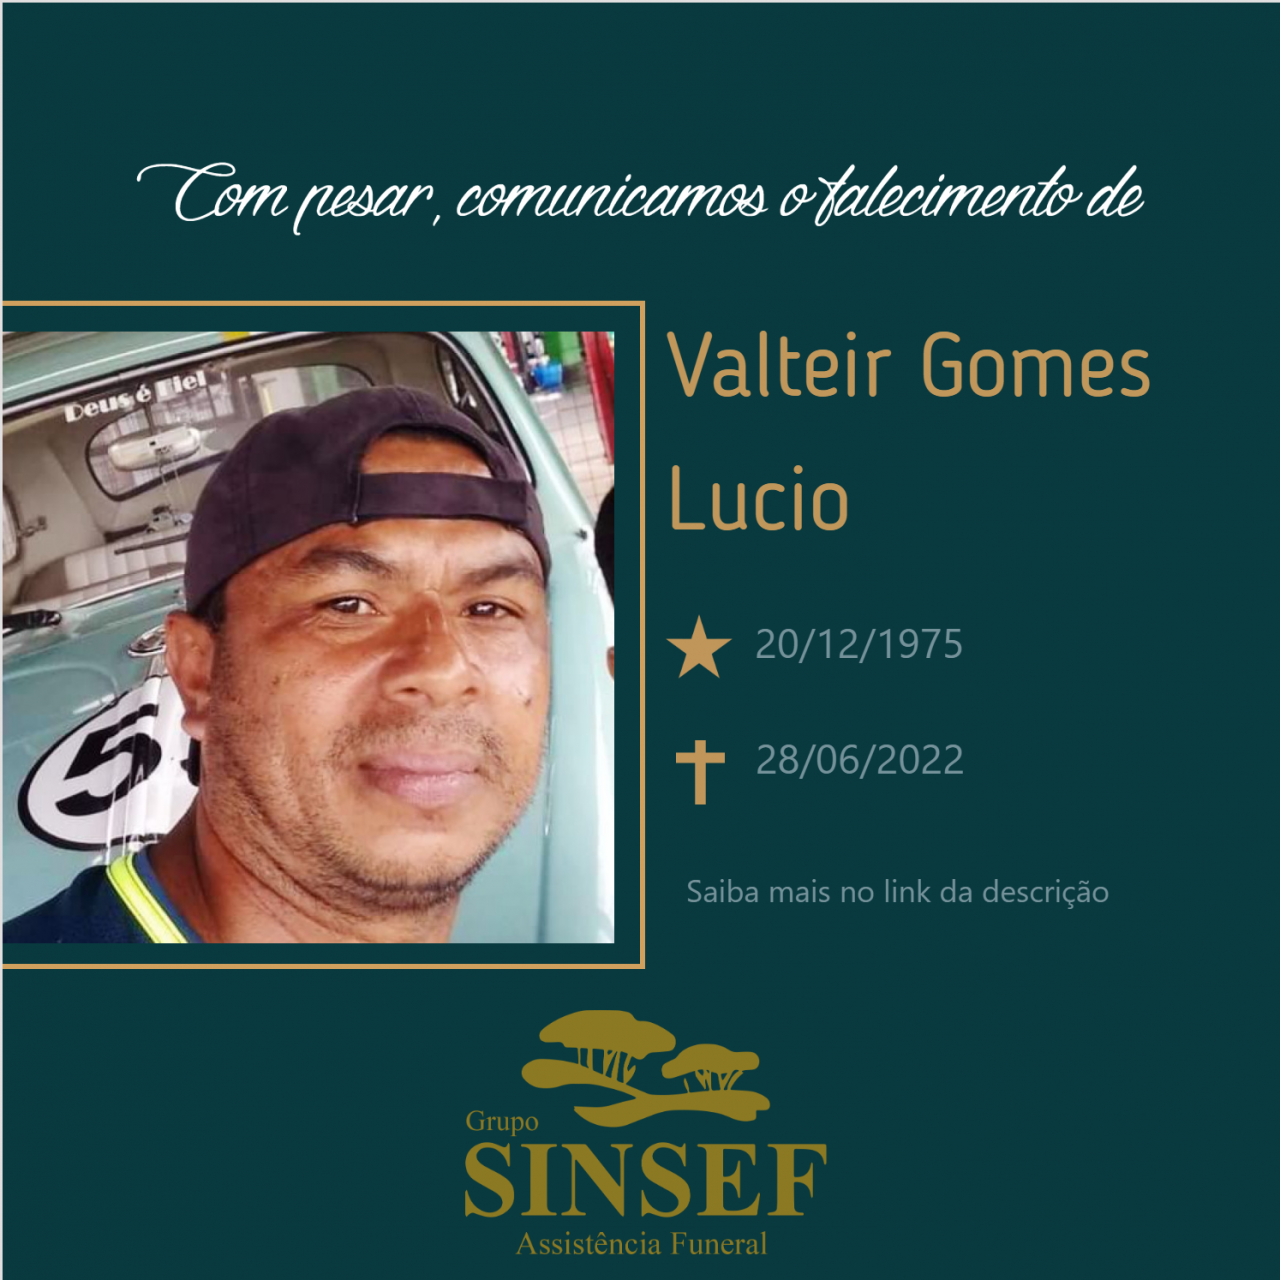 Com pesar, o Grupo Sinsef se despede do Sr. Valteir Gomes Lucio